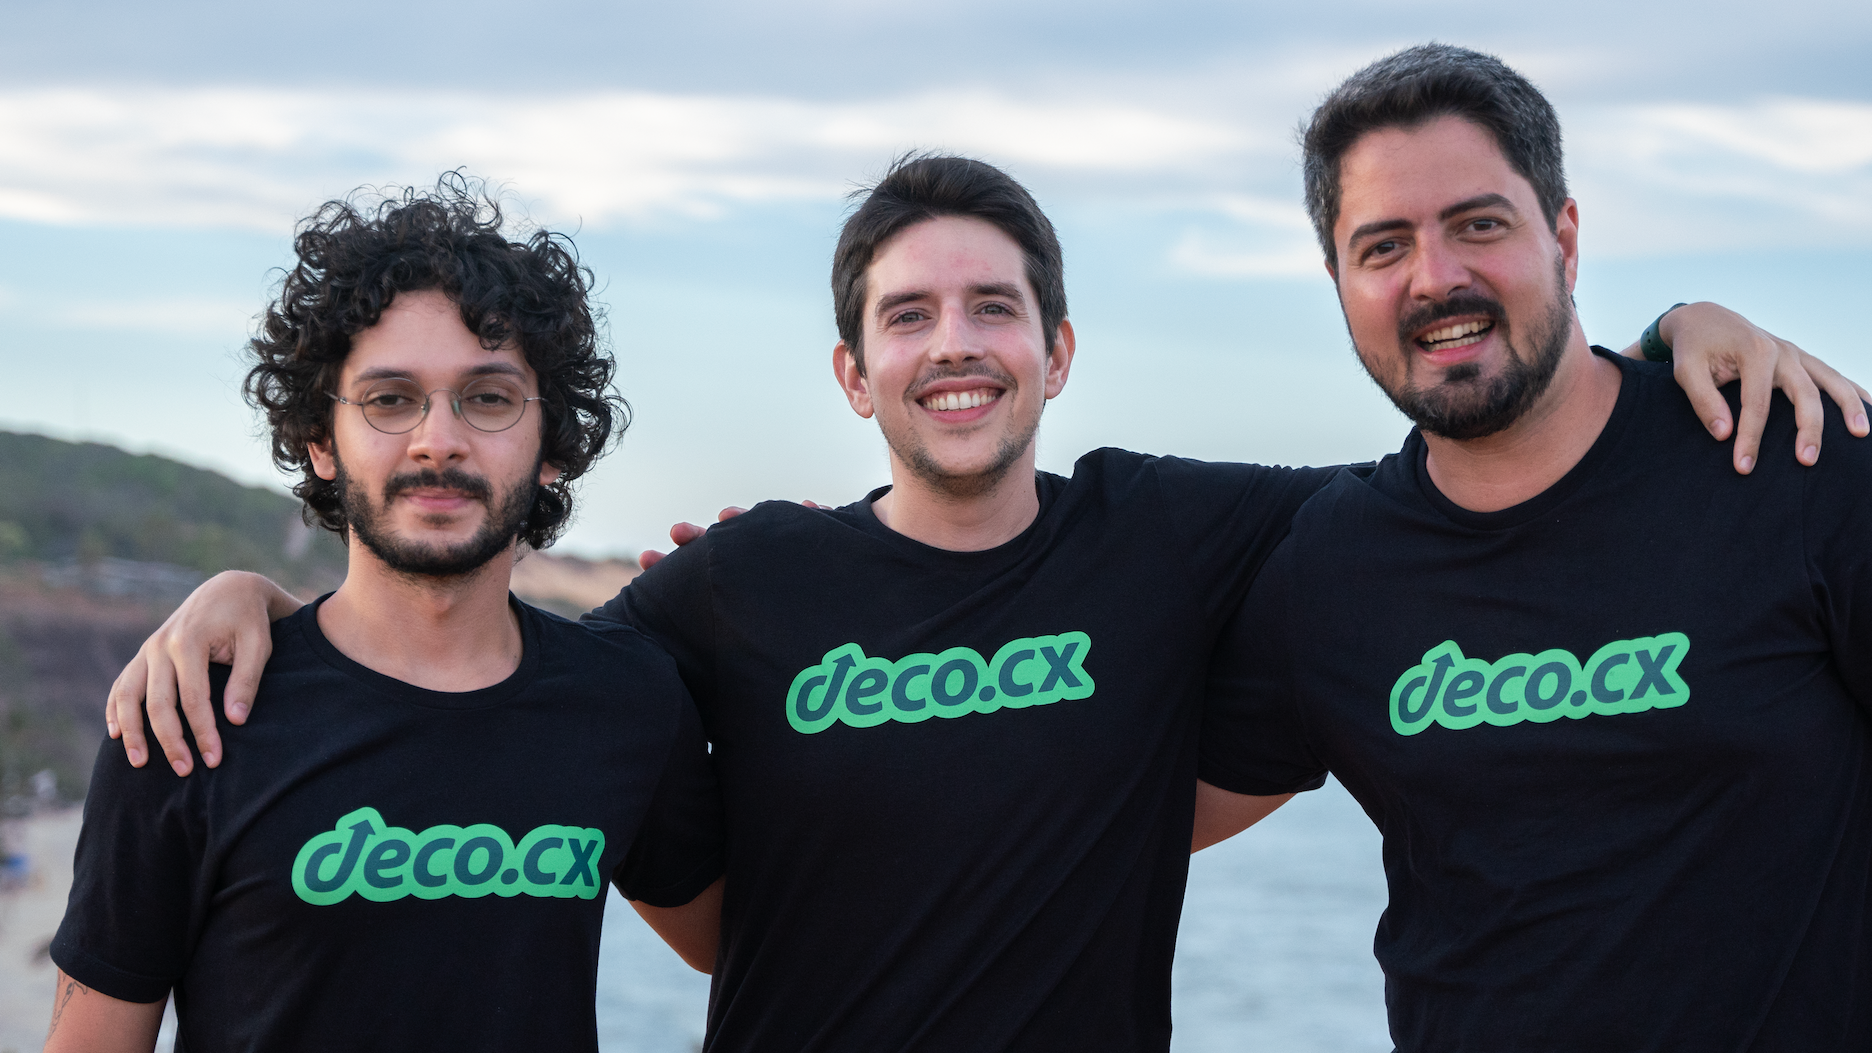 Deco.cx, e-commerce, open-source frontend development platform